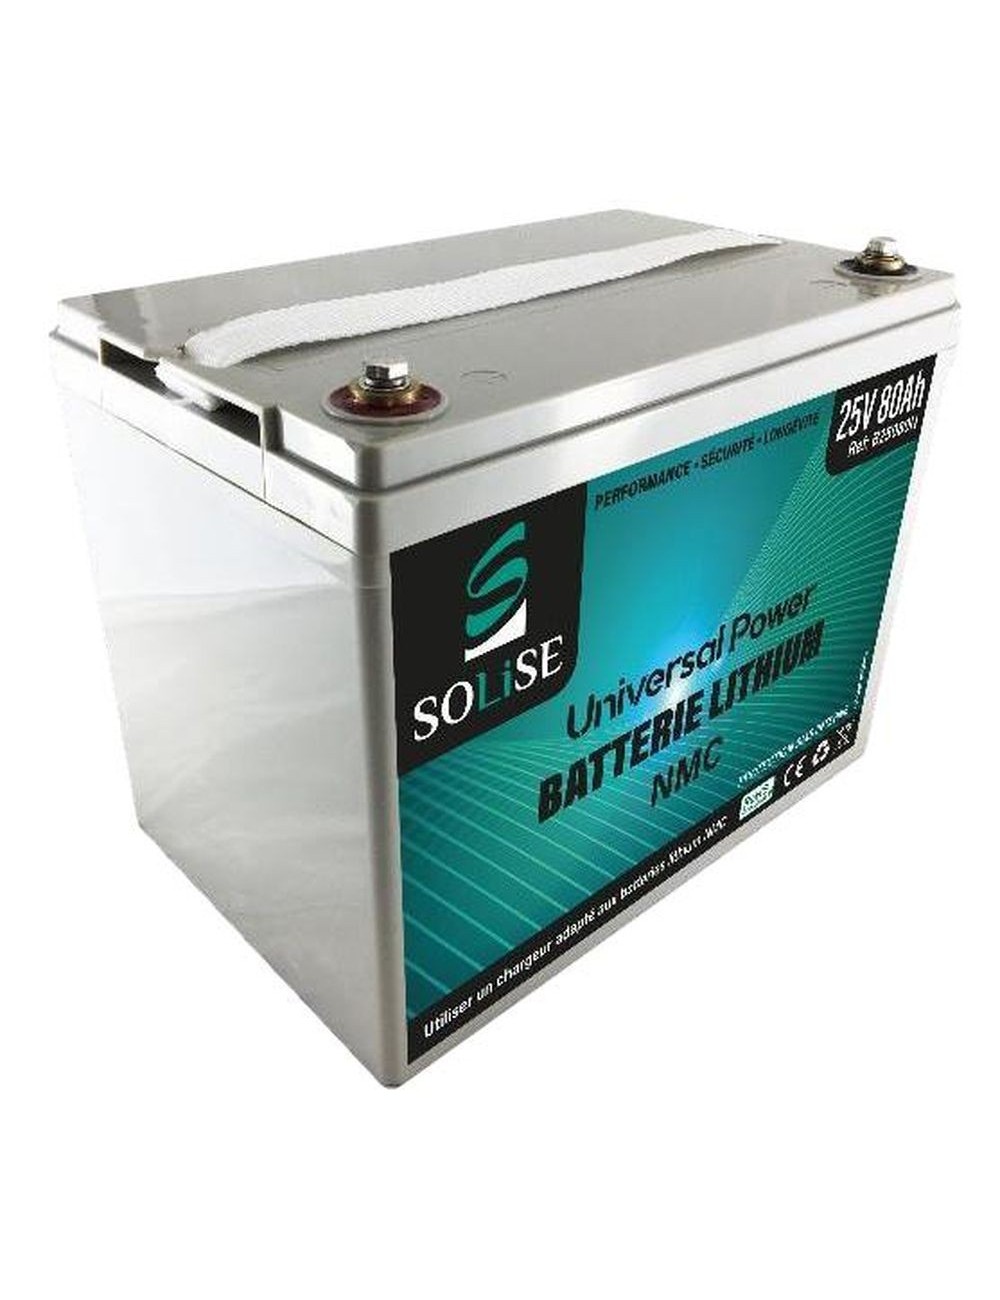 RLI B25080N (B25080N) Batterie LiFePO4 24V Solise (25V - 80Ah)